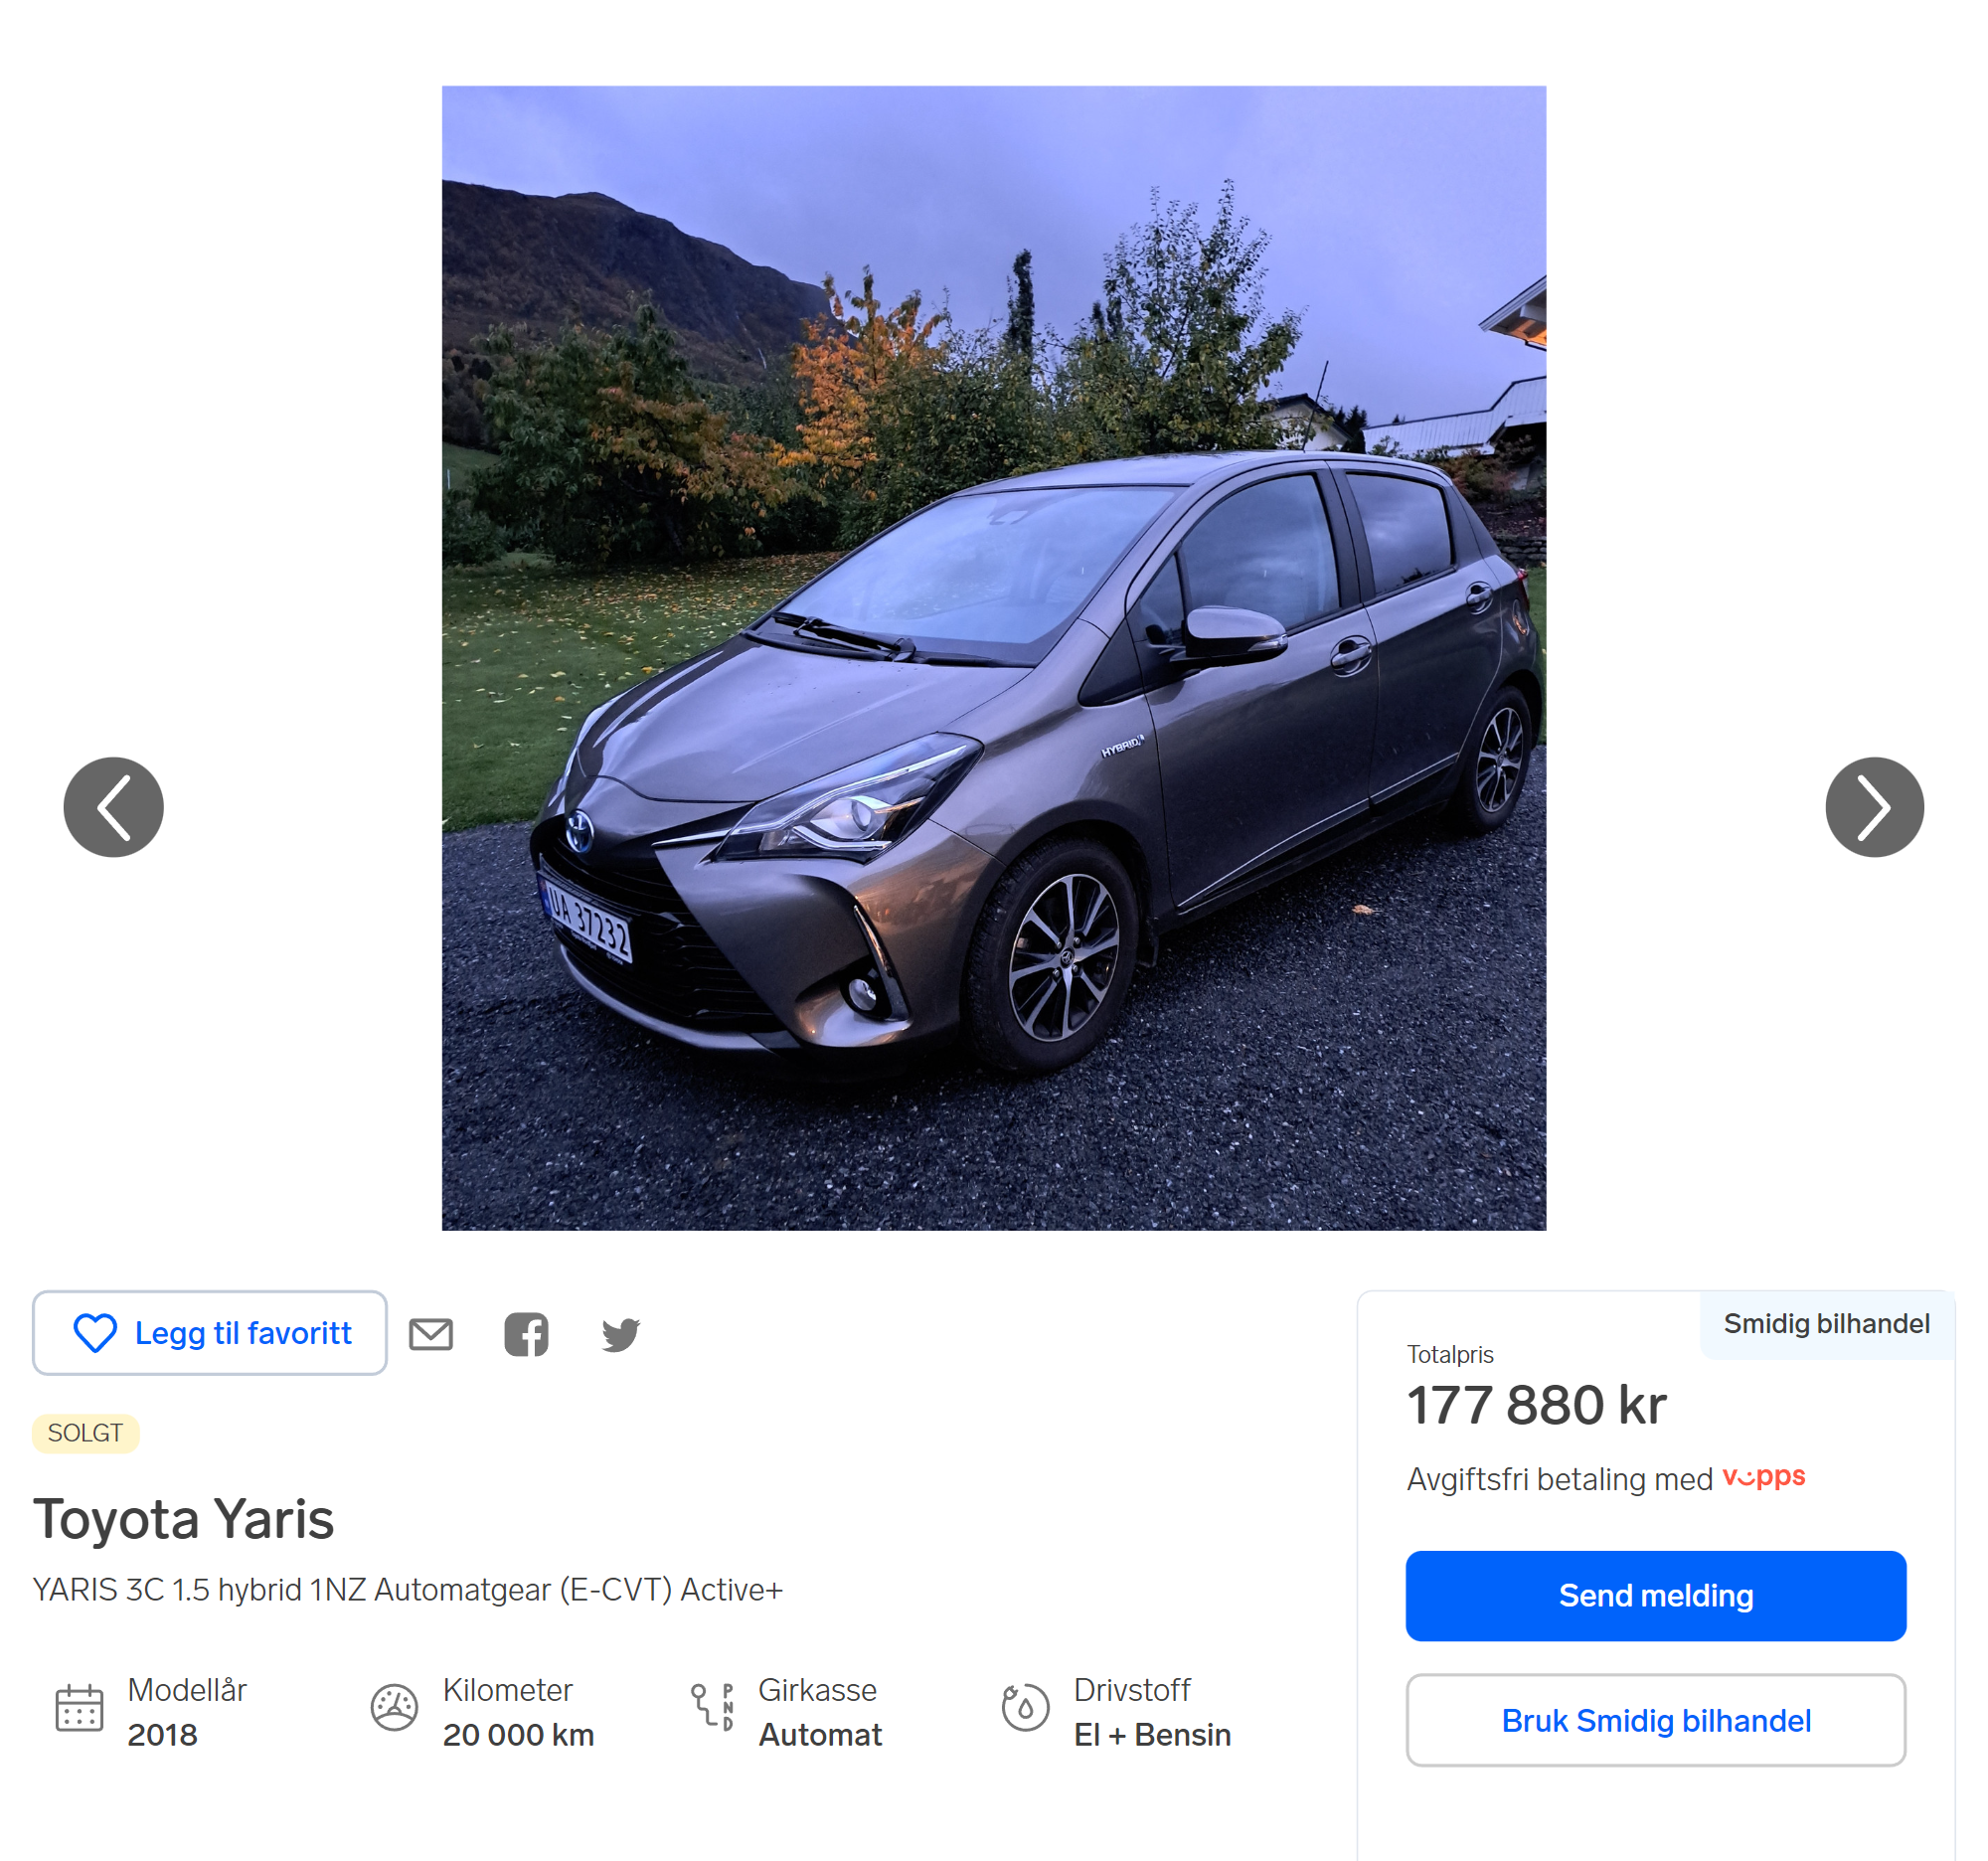 Цена Тойоты, если покупать напрямую у владельца. Источник: finn.no